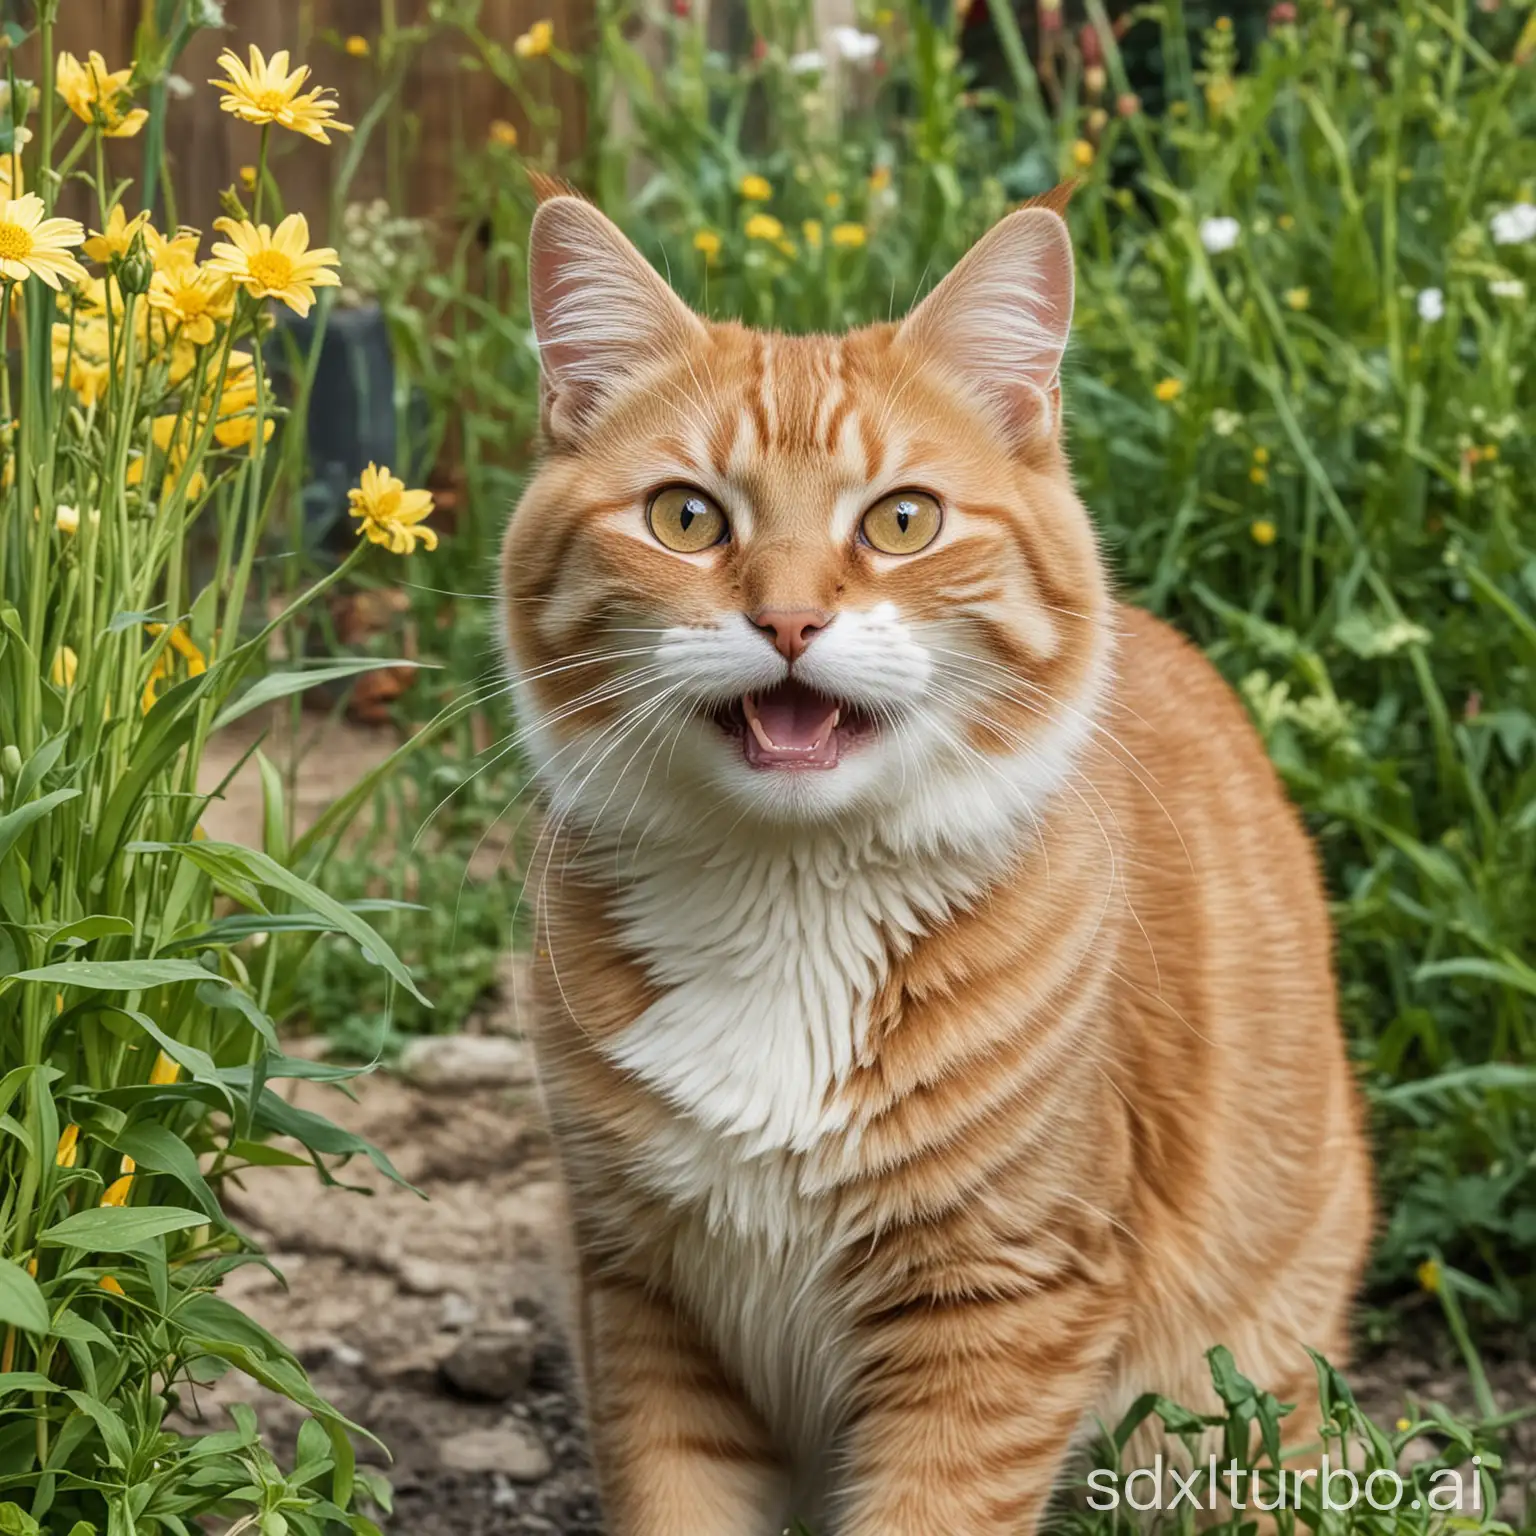 Joyful-Cat-Exploring-a-Vibrant-Garden